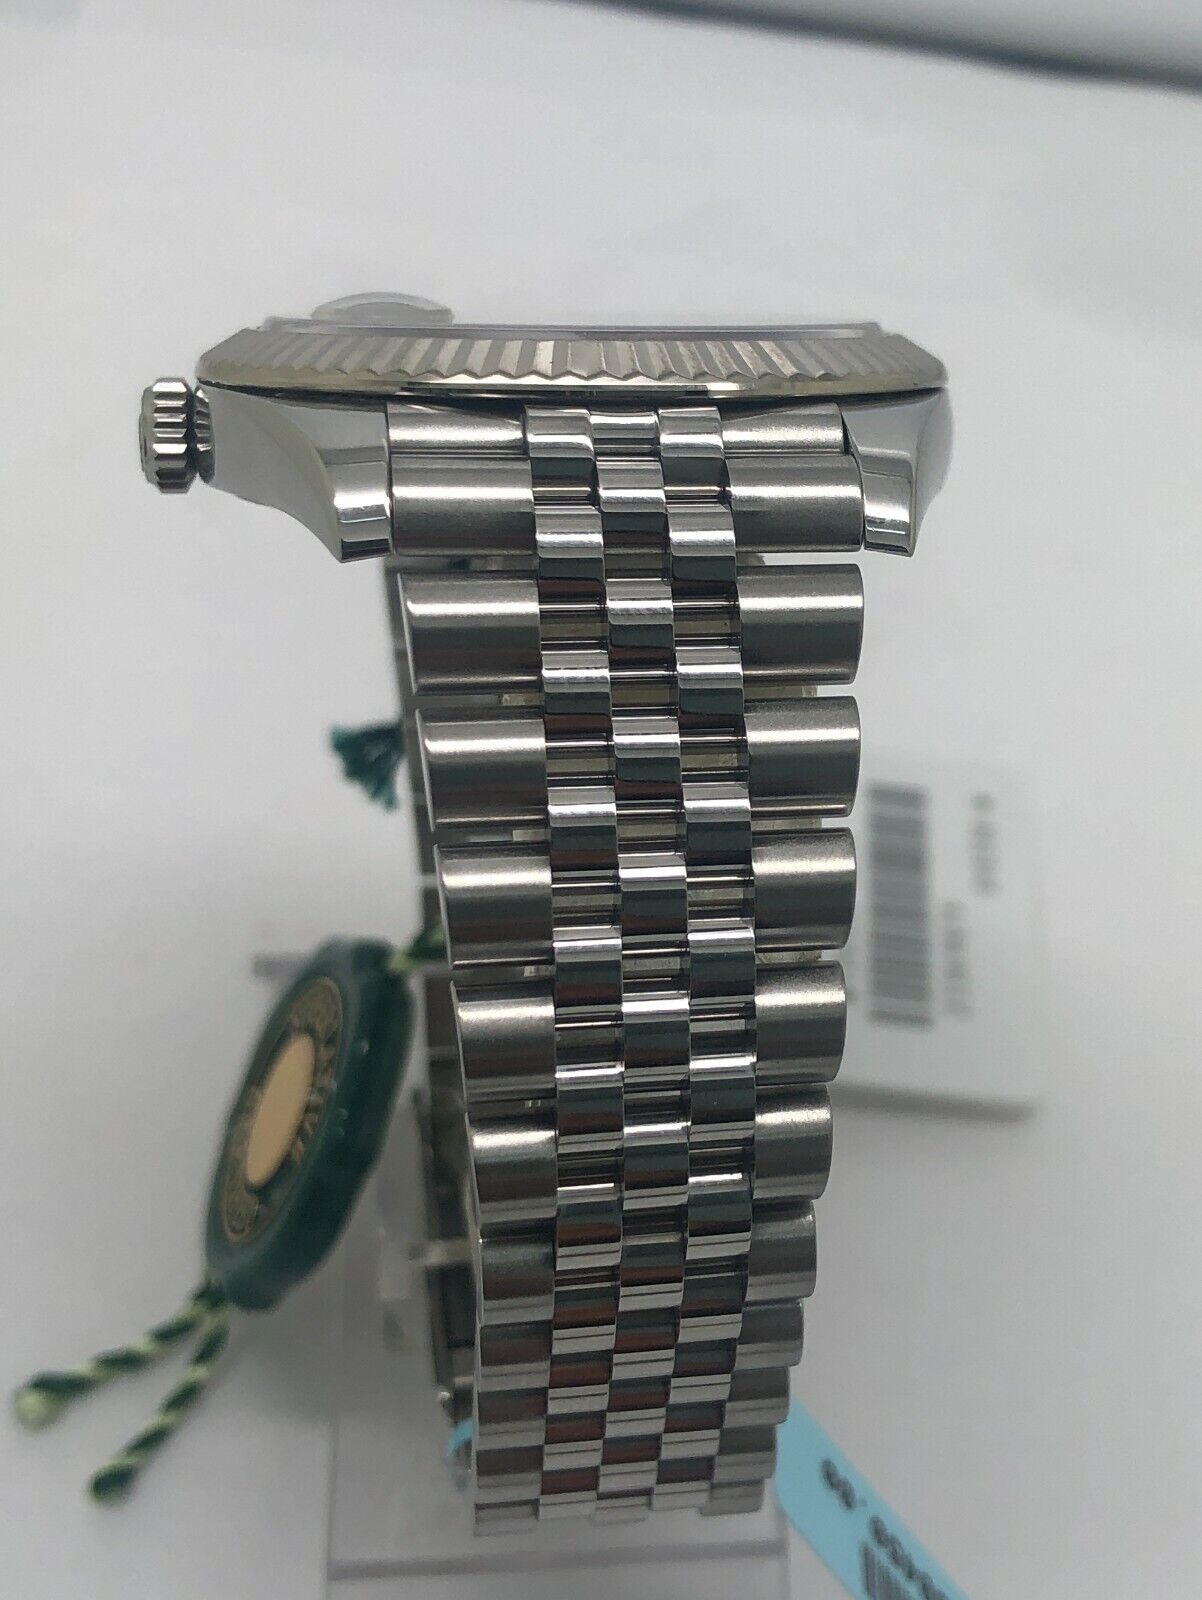 Rolex Datejust 41mm 18k Gold fluted Bezel Slate Dial Watch 126334